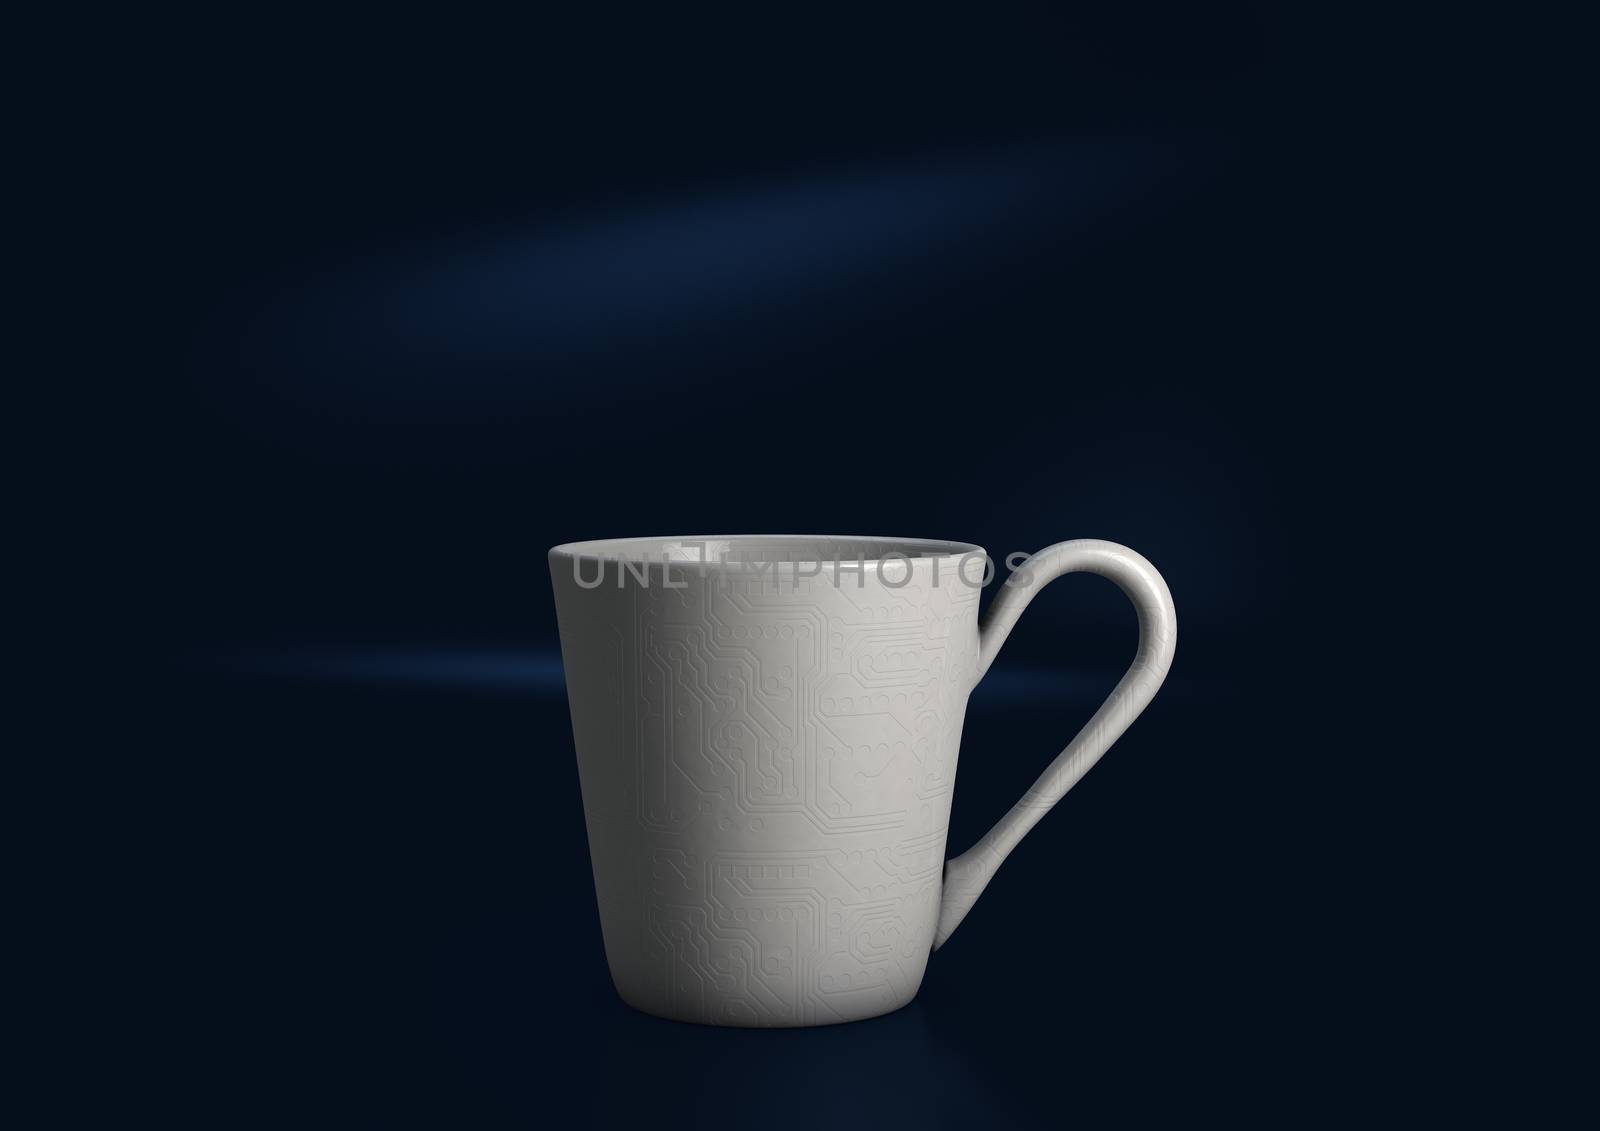 Digital Coffee Cup by clusterx